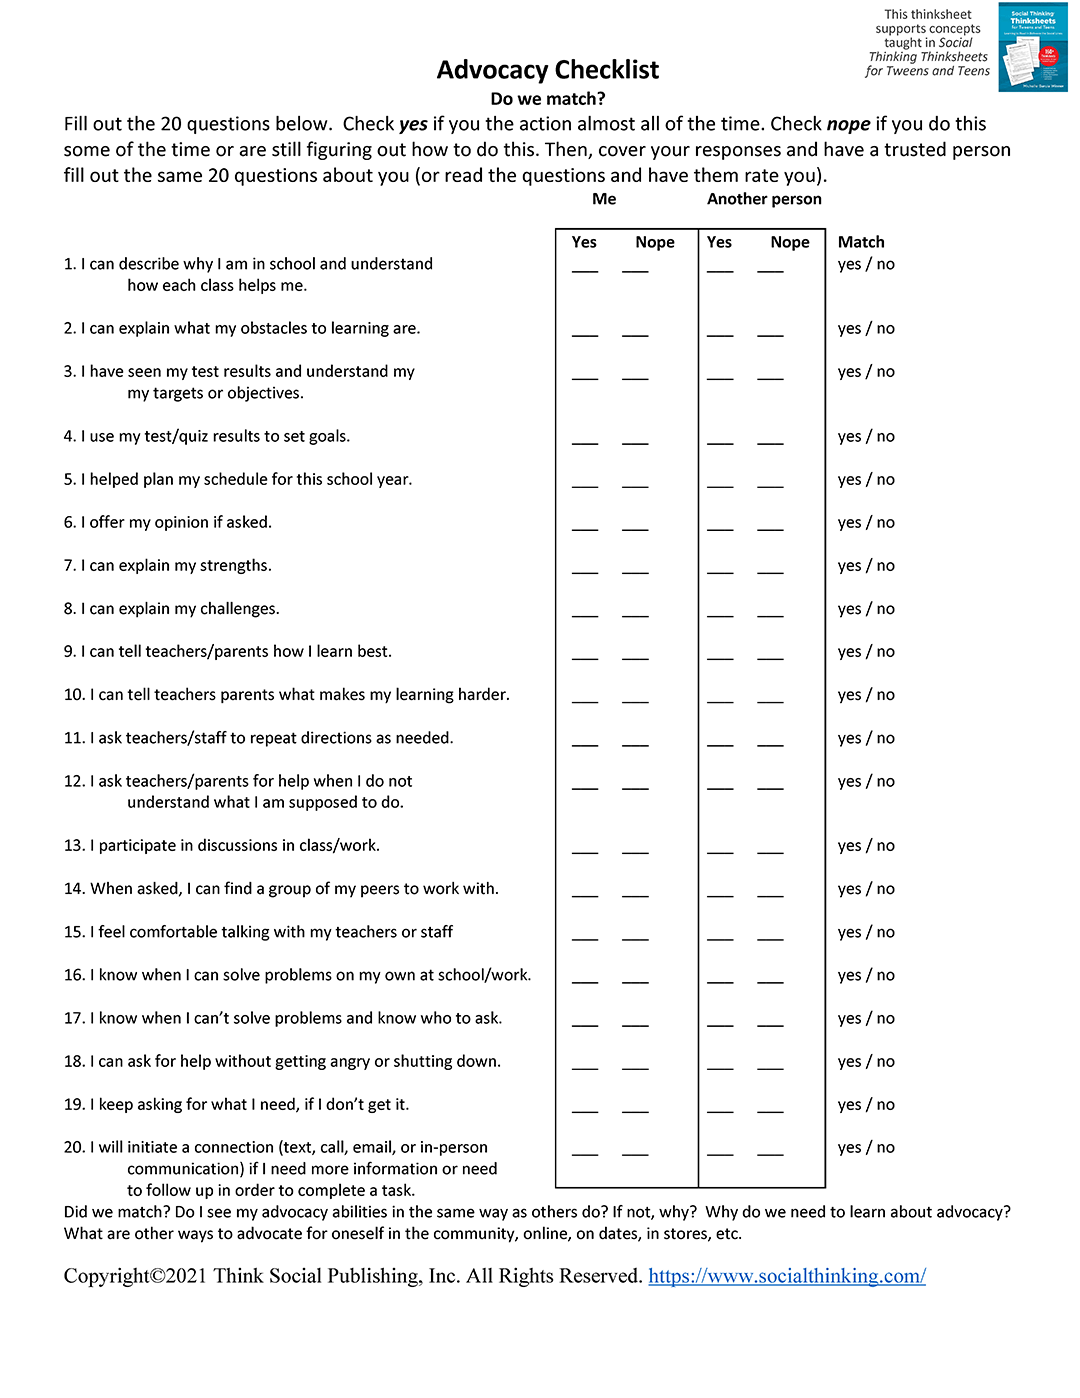 Advocacy Checklist